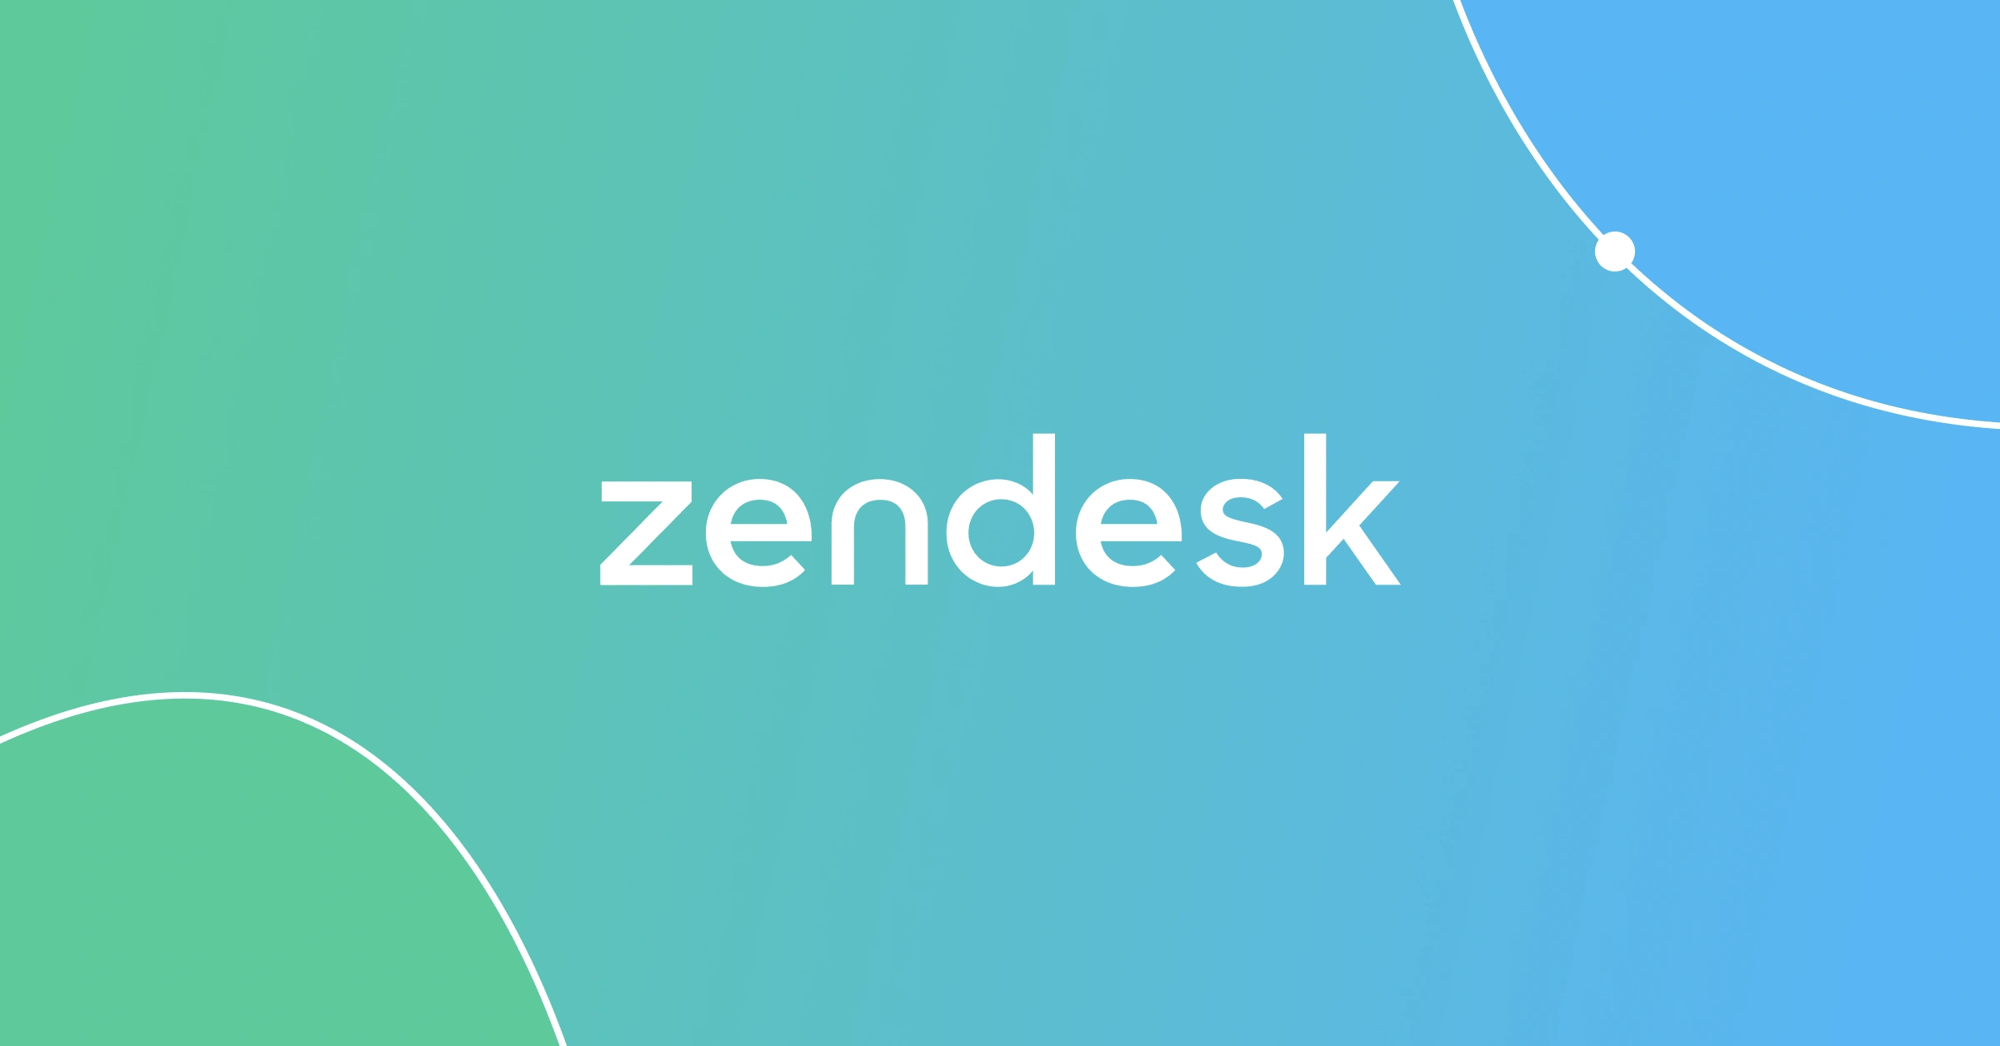 Blog_Header_Zendesk_Partnership-1